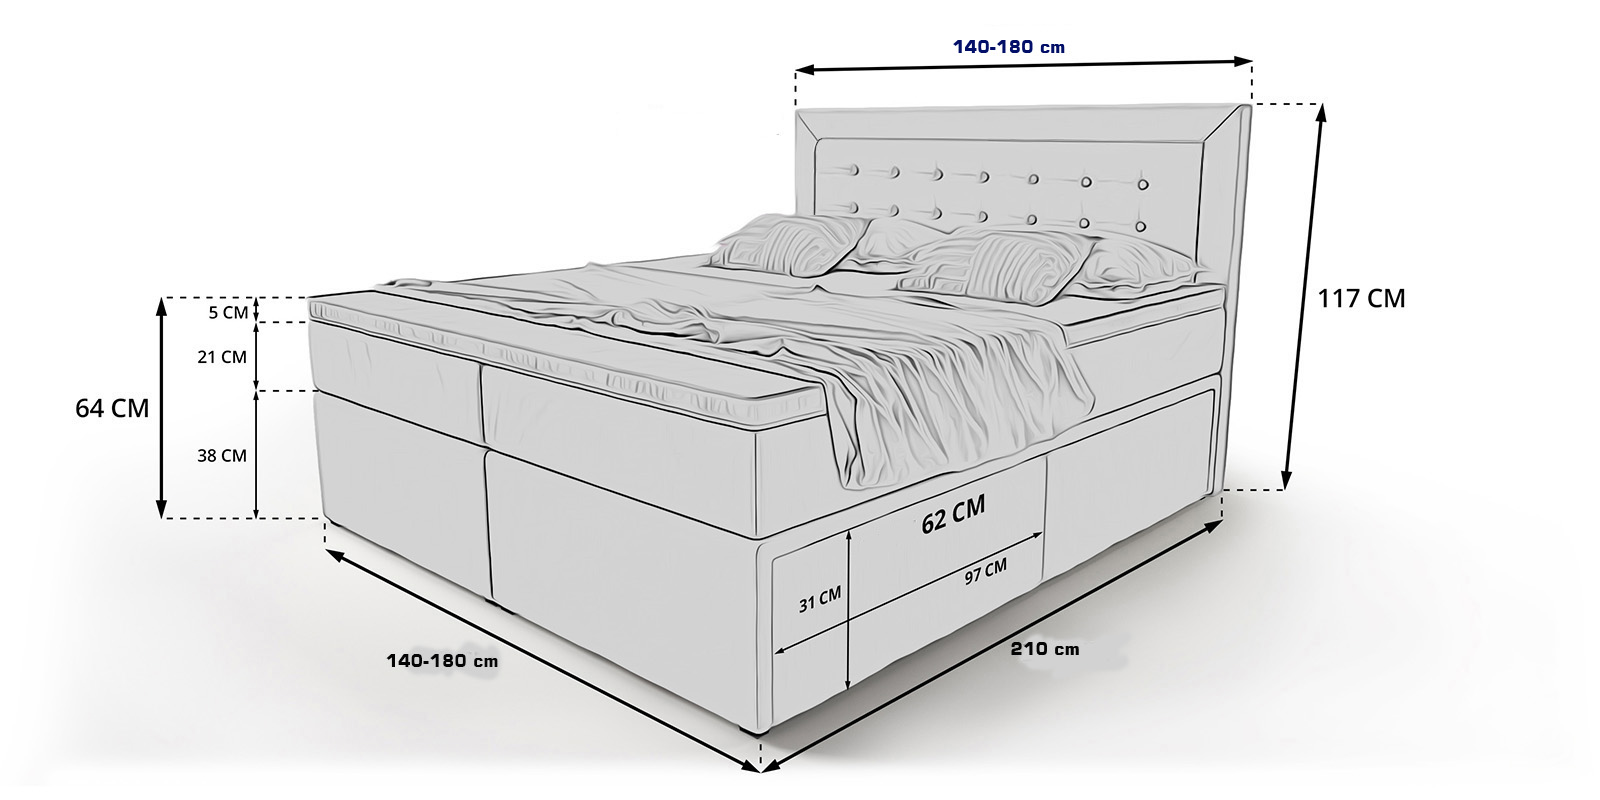 комфортная высота кровати с матрасом